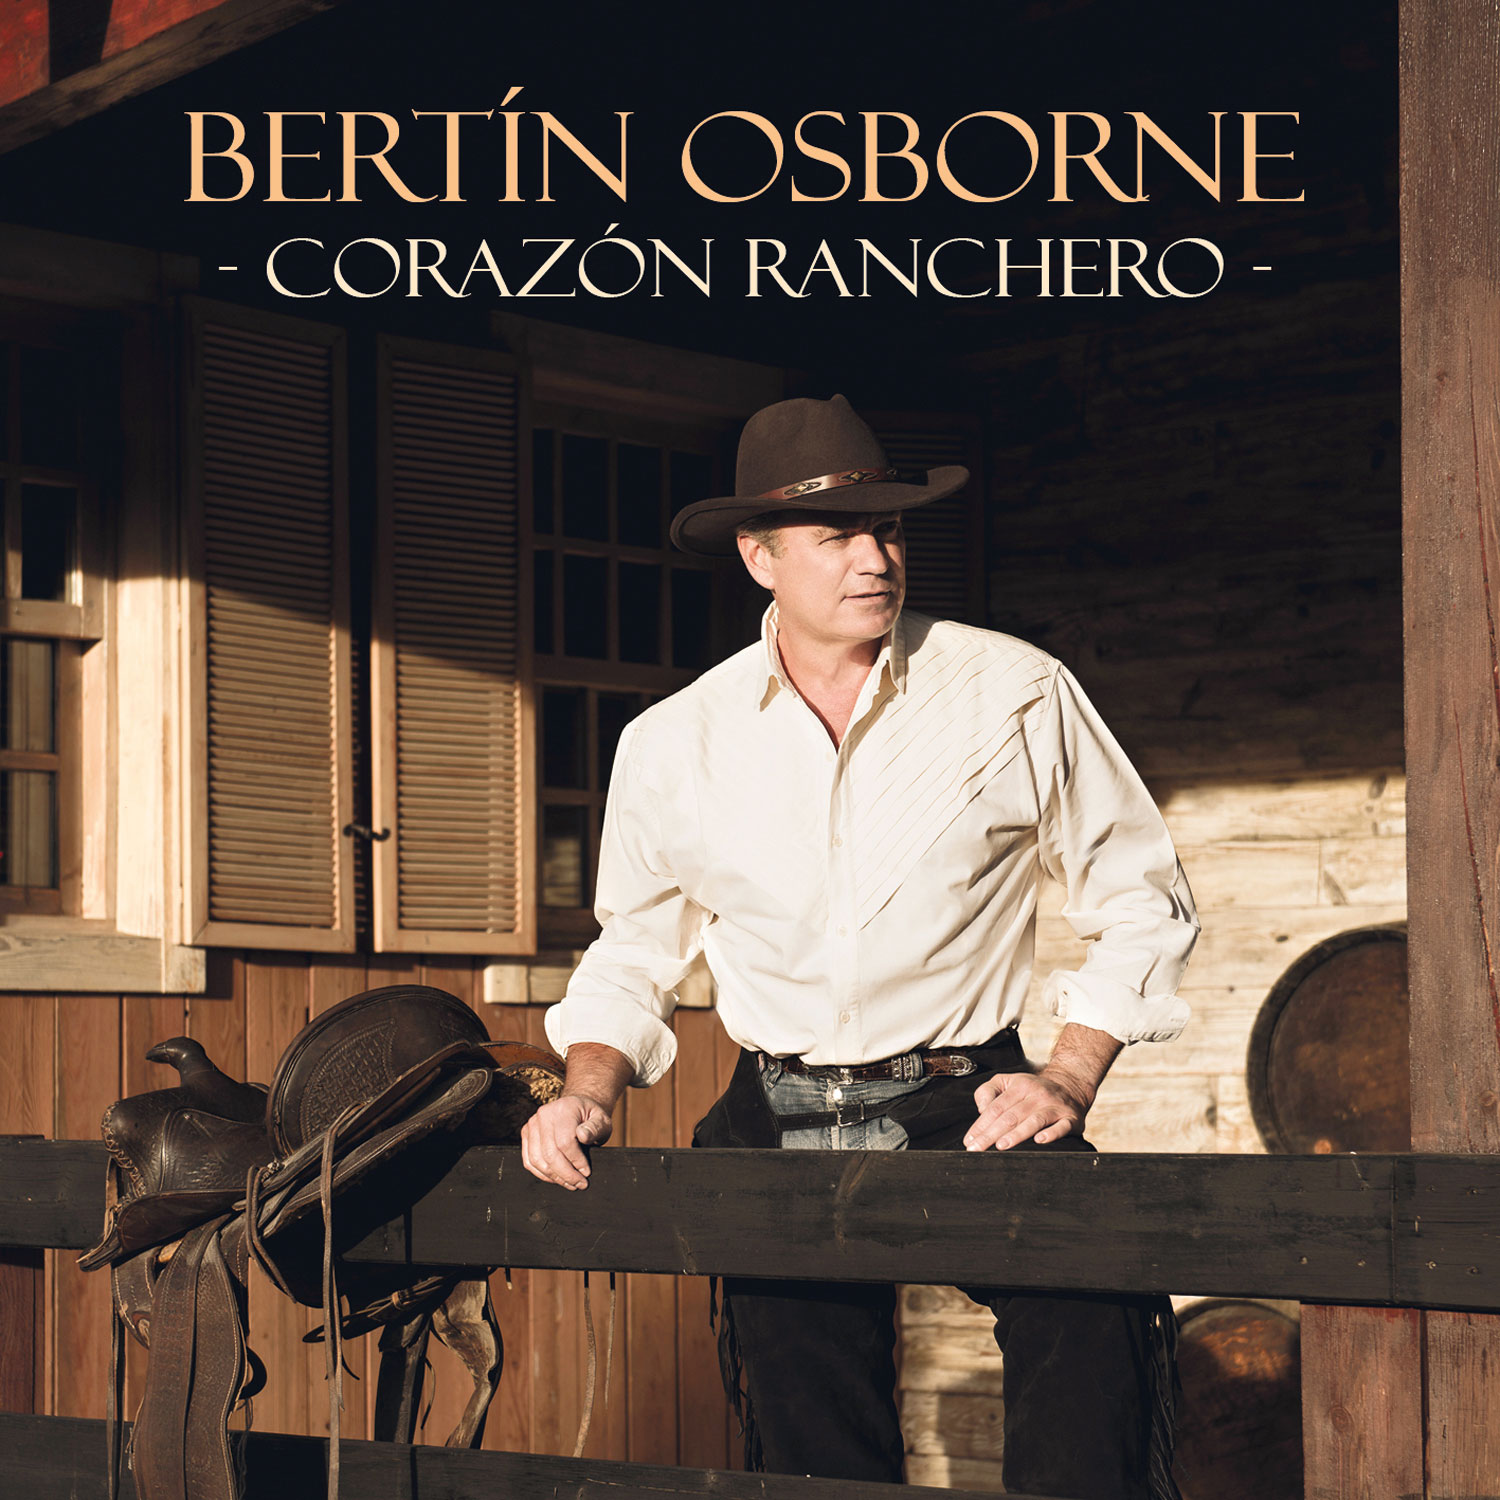 Bertín Osborne: Corazón ranchero, la portada del disco